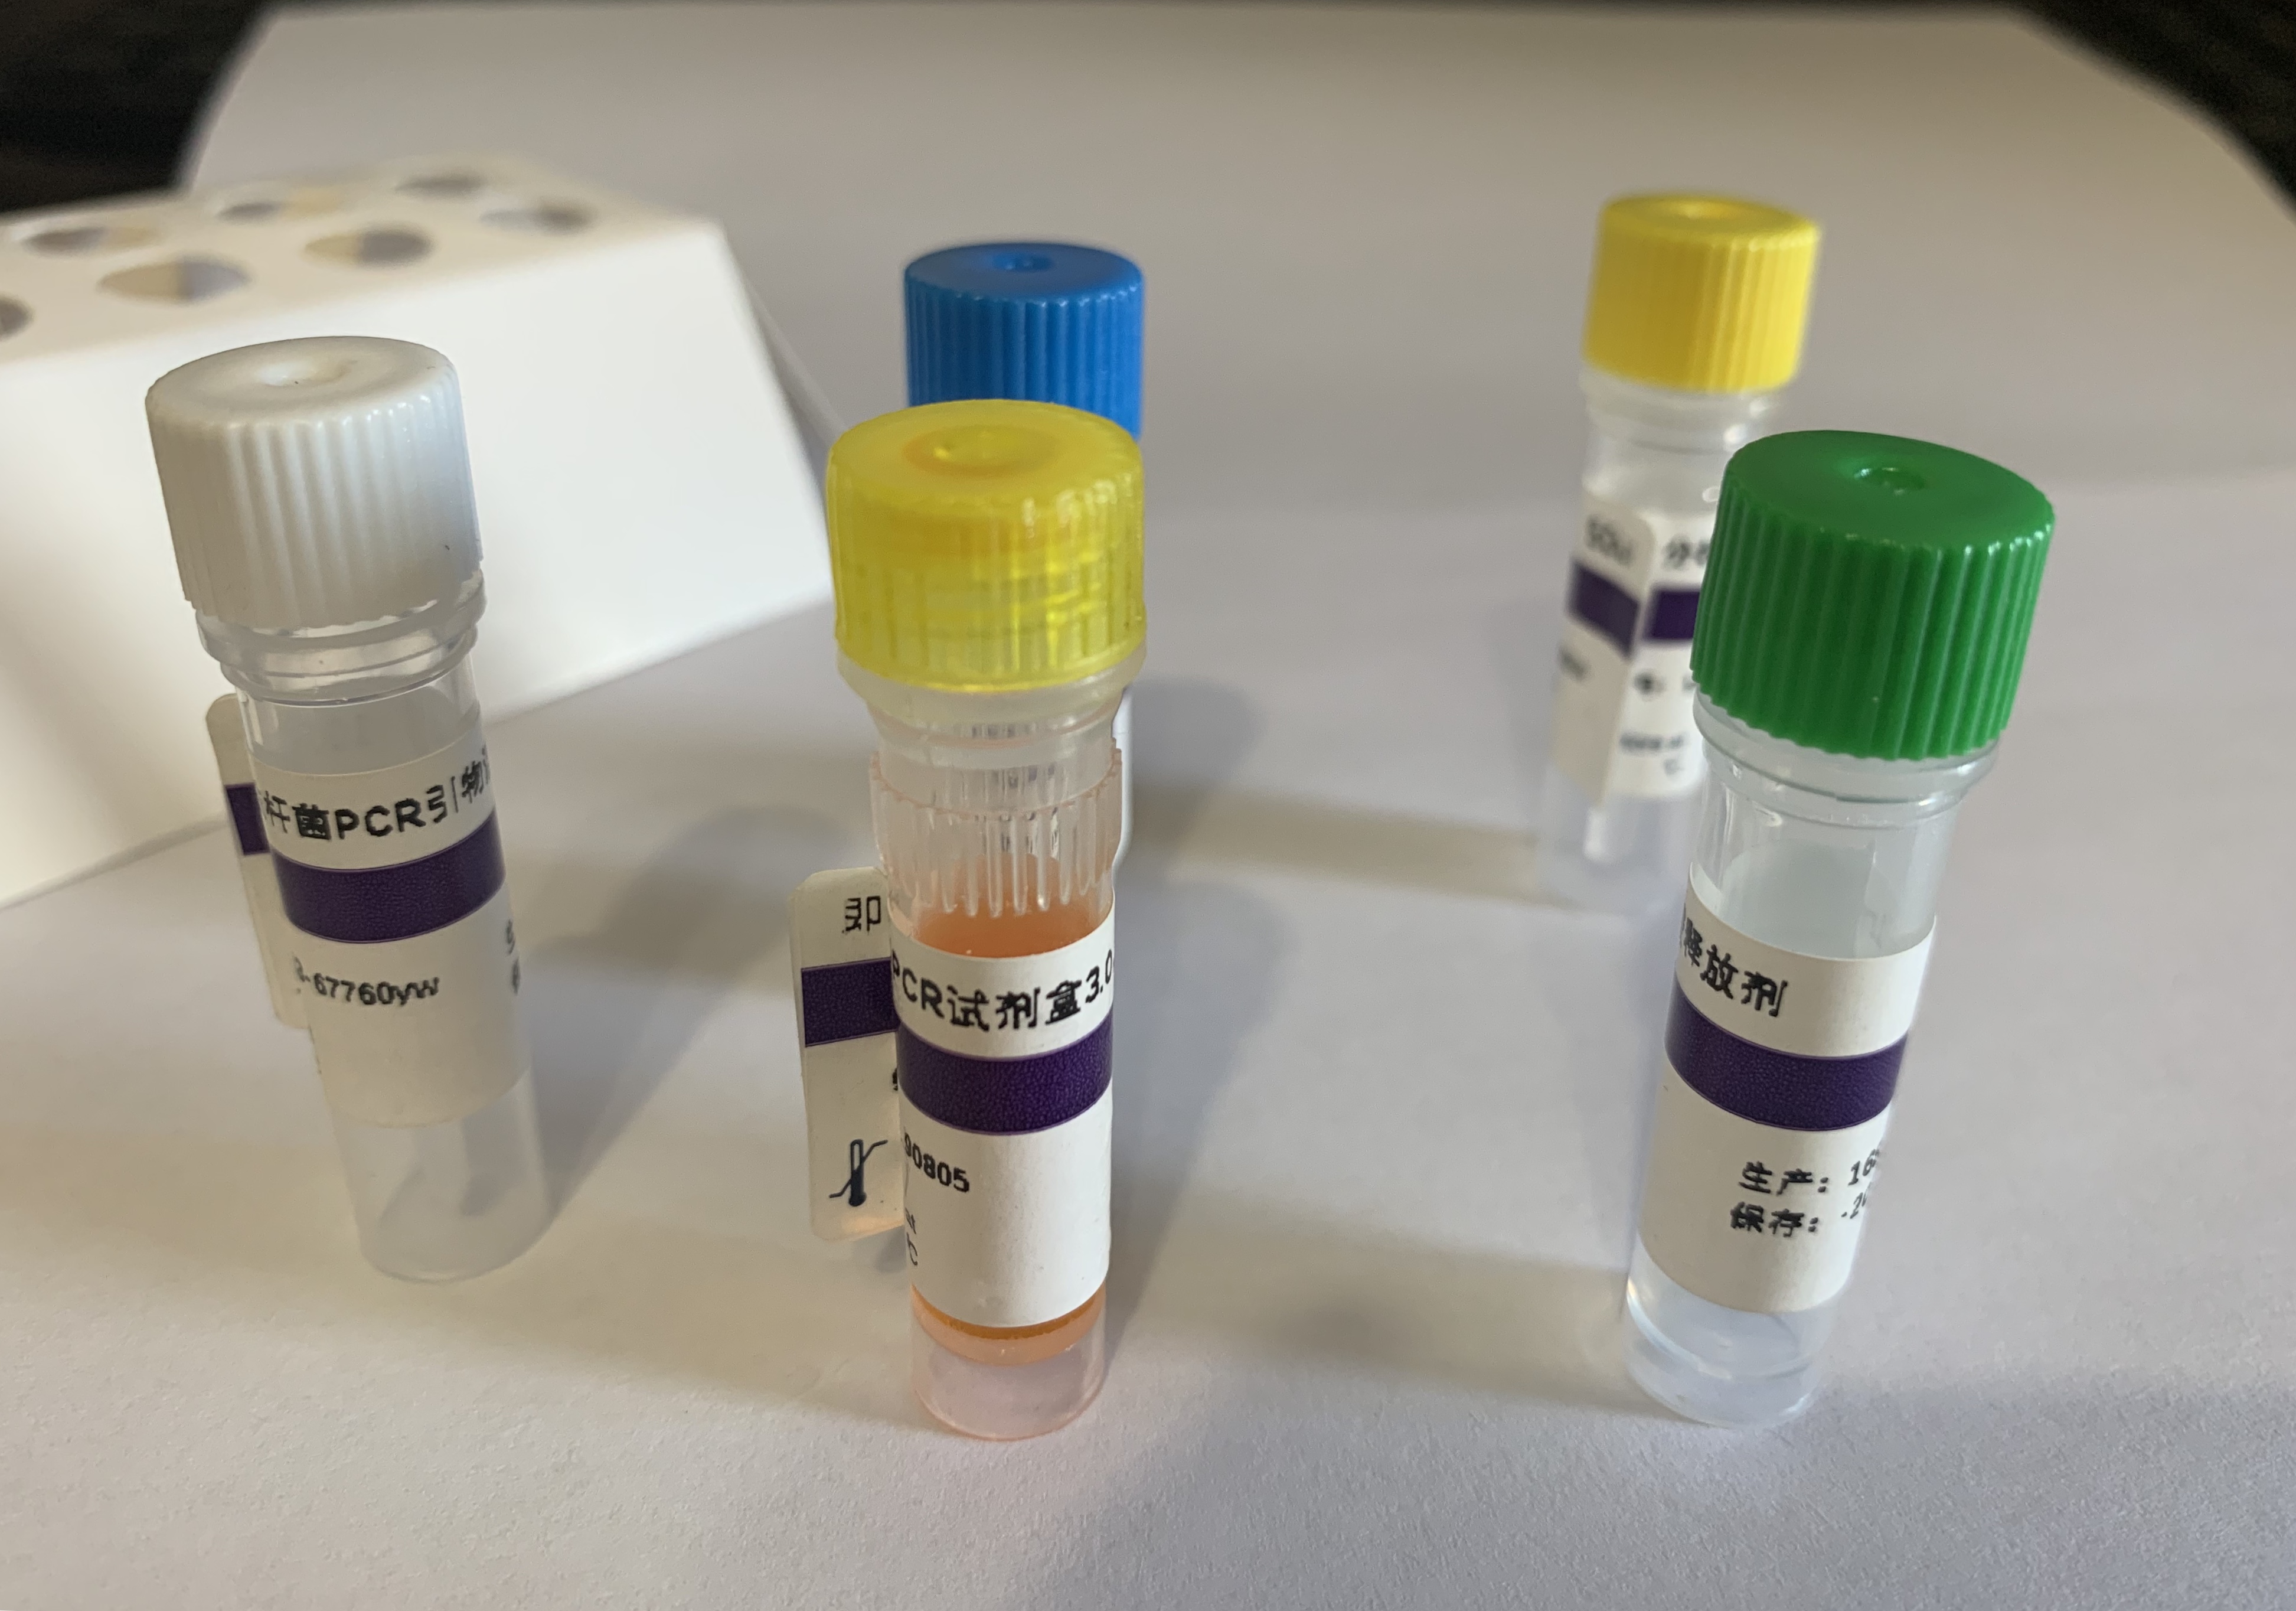 肉毒梭状芽孢杆菌C型外毒素基因染料法荧光定量PCR试剂盒